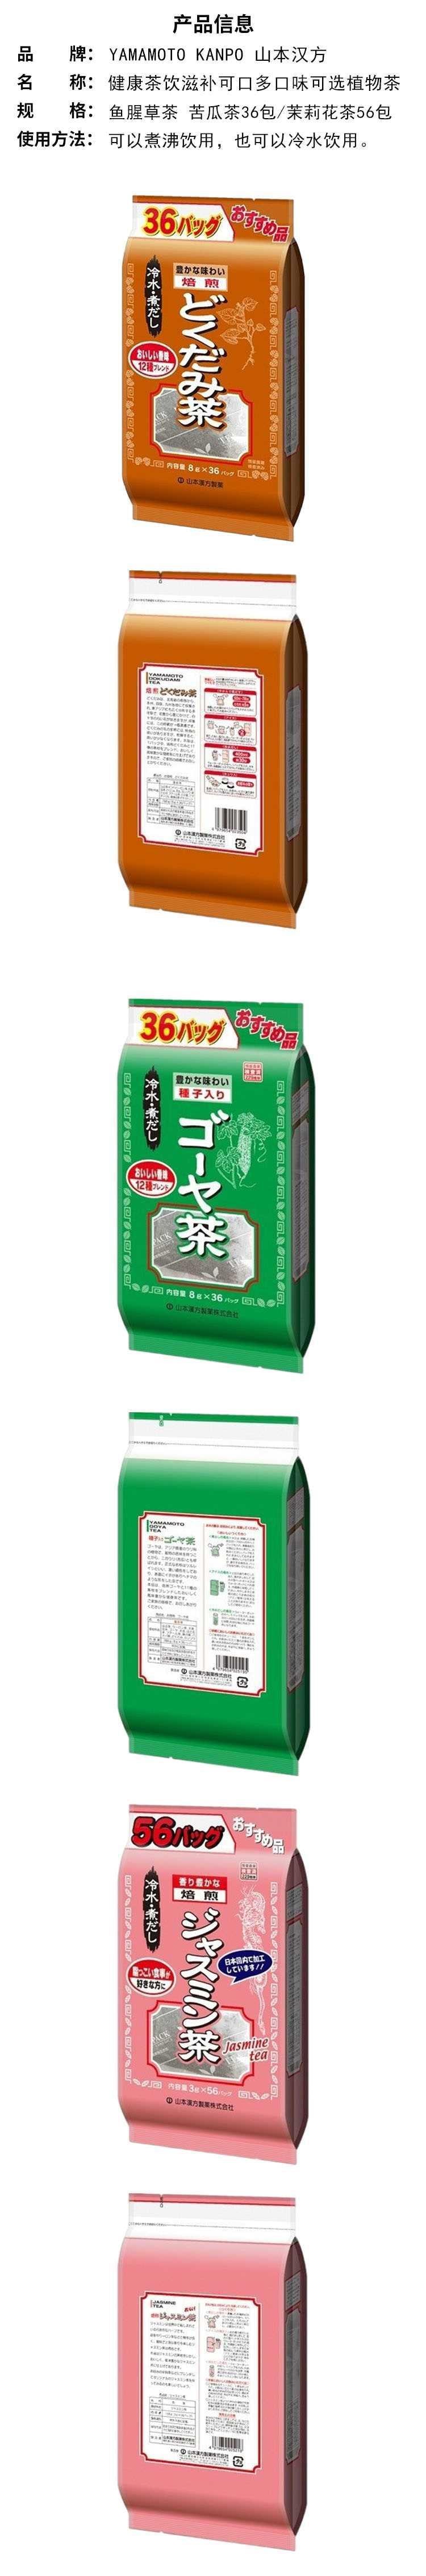 【日本直效郵件】YAMAMOTO山本漢方製藥 超值茉莉花茶 3g*56包